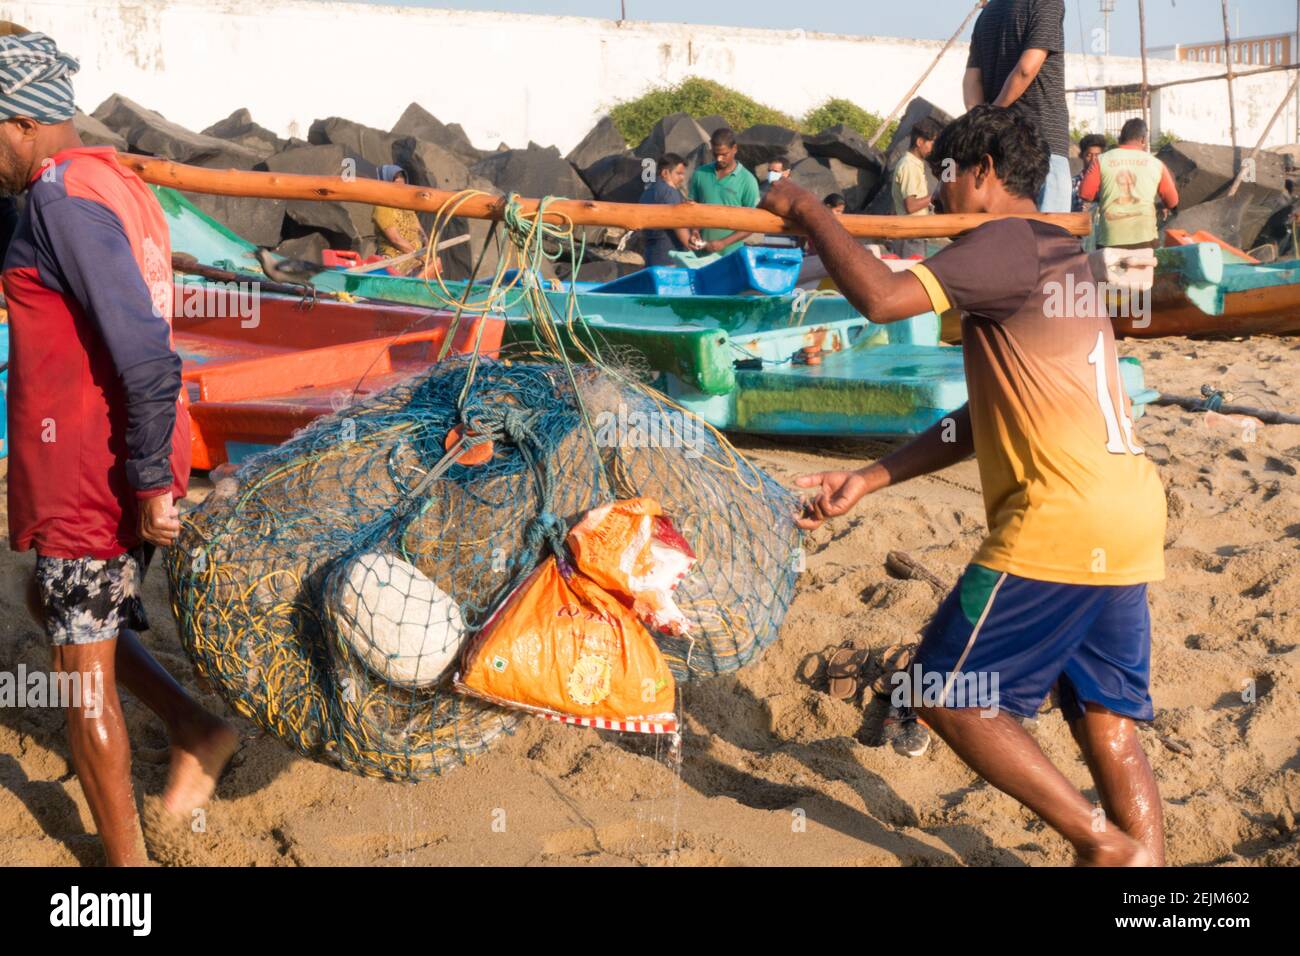 Fischer Verschieben Boot von Wasser zu Land nach den Tagen Arbeiten Stockfoto